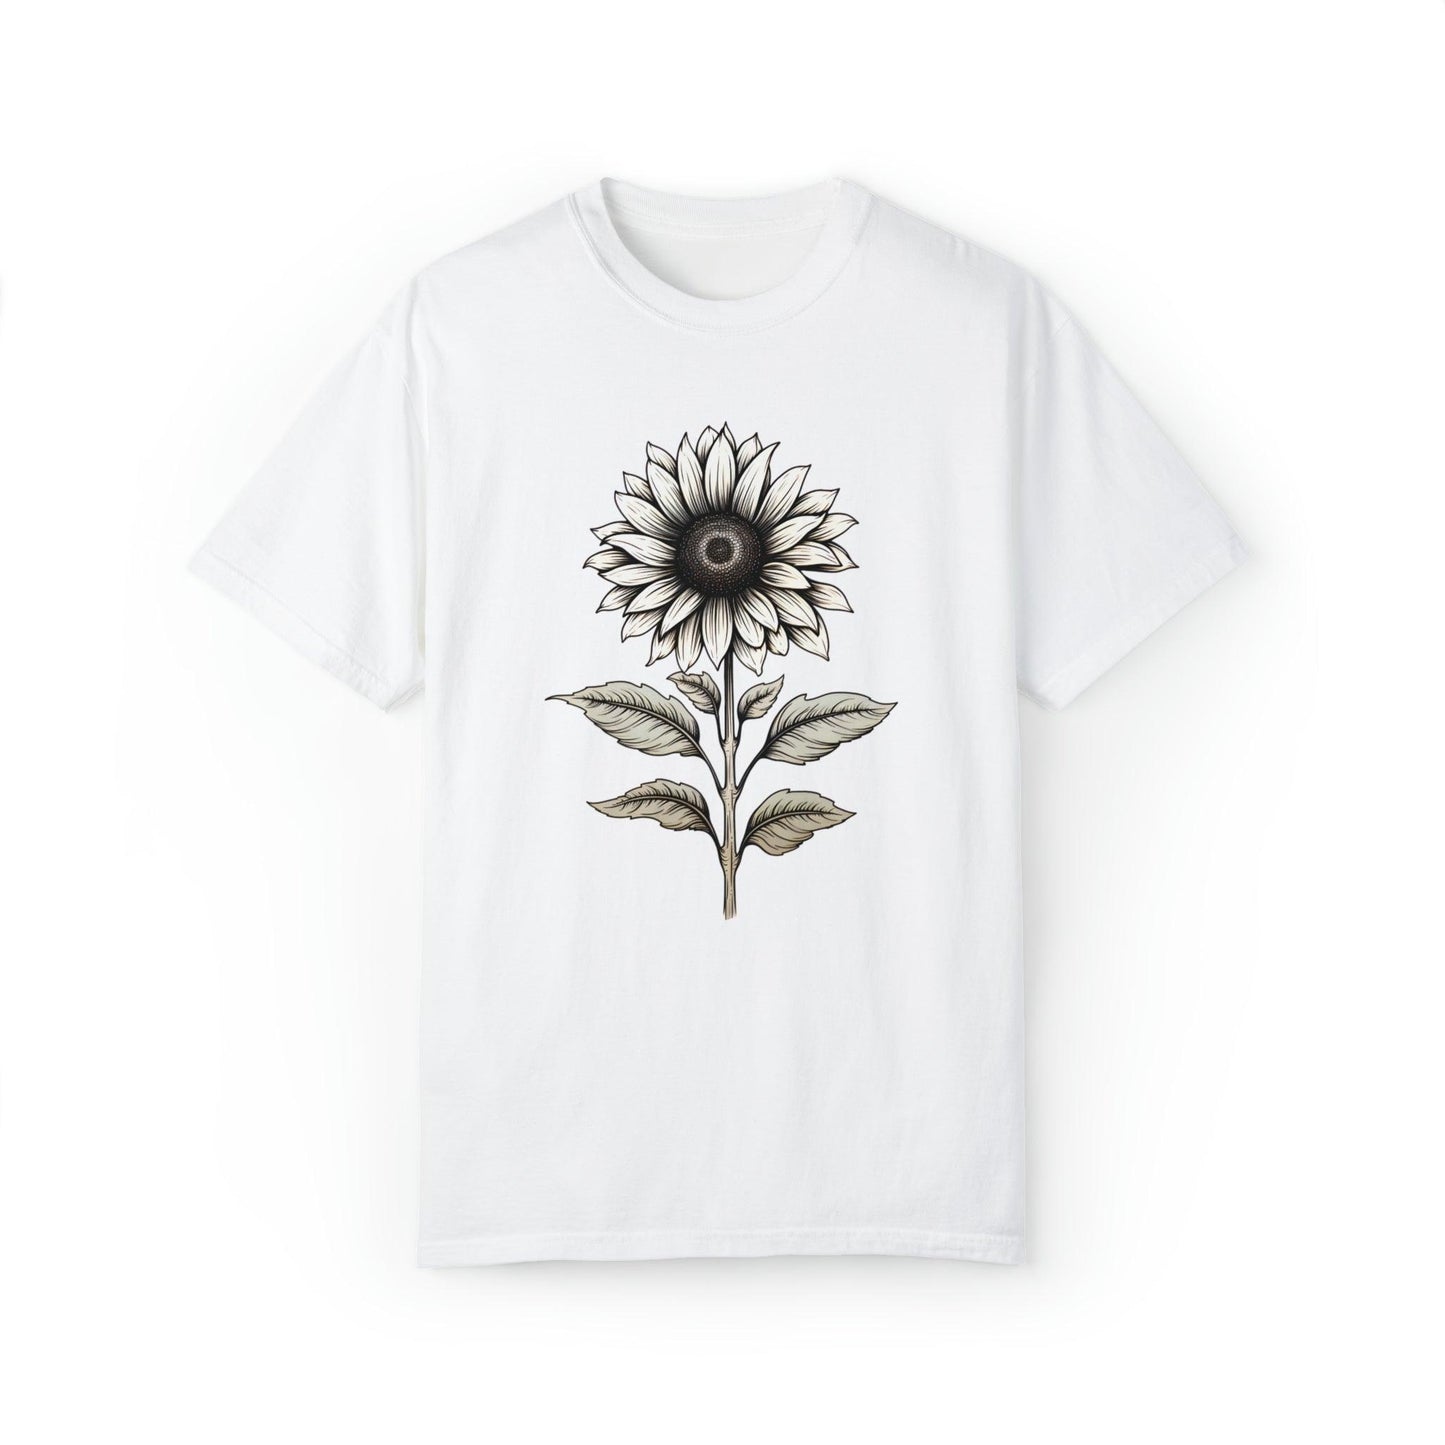 Sunflower Shirt Flower Shirt Aesthetic, Floral Graphic Tee Floral Shirt Flower T-shirt, Gift For Her Women Wildflower Shirt